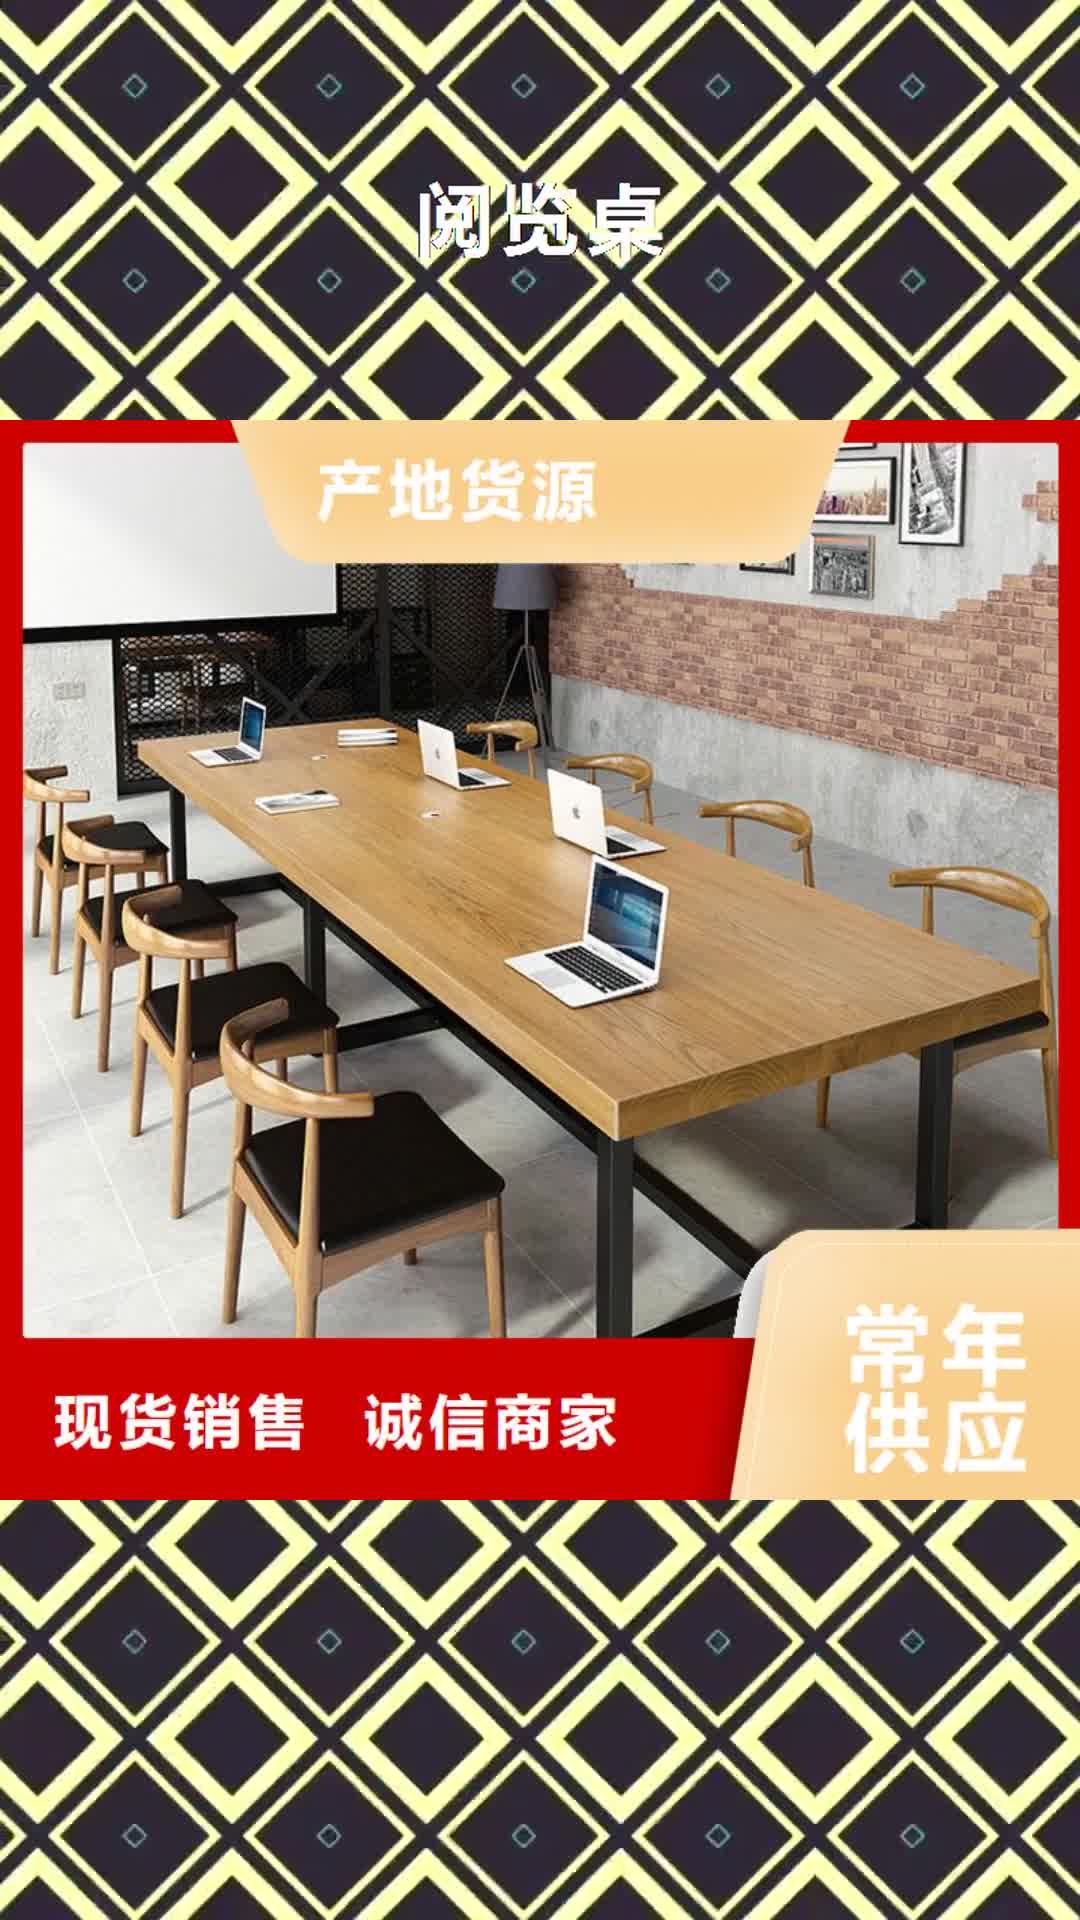 北京 阅览桌,【密集架】多种工艺